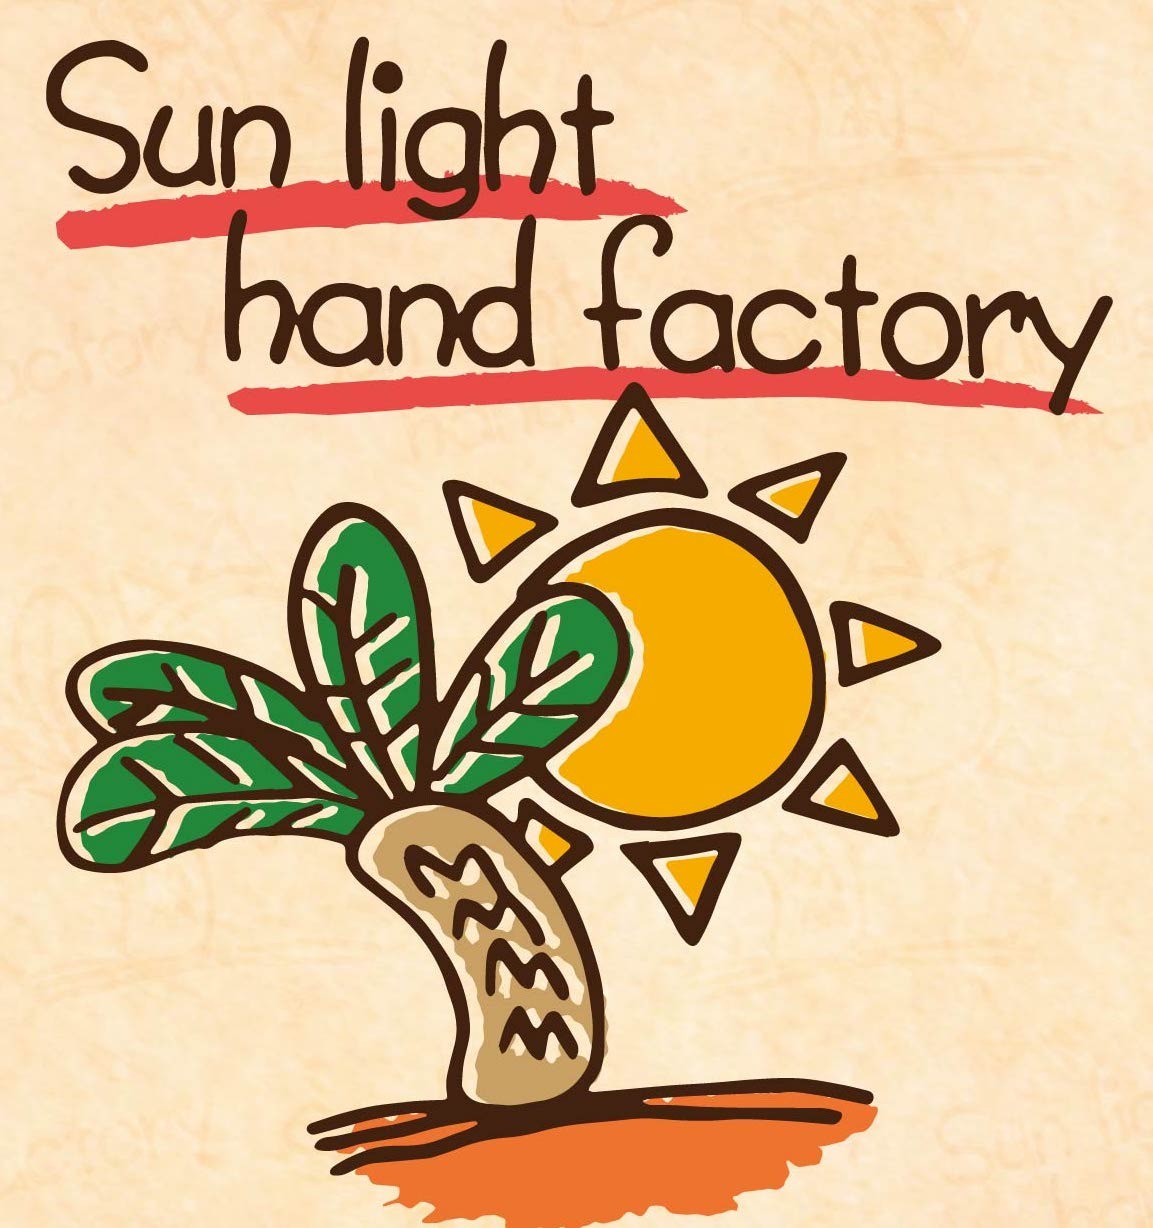 Sunlight hand factory